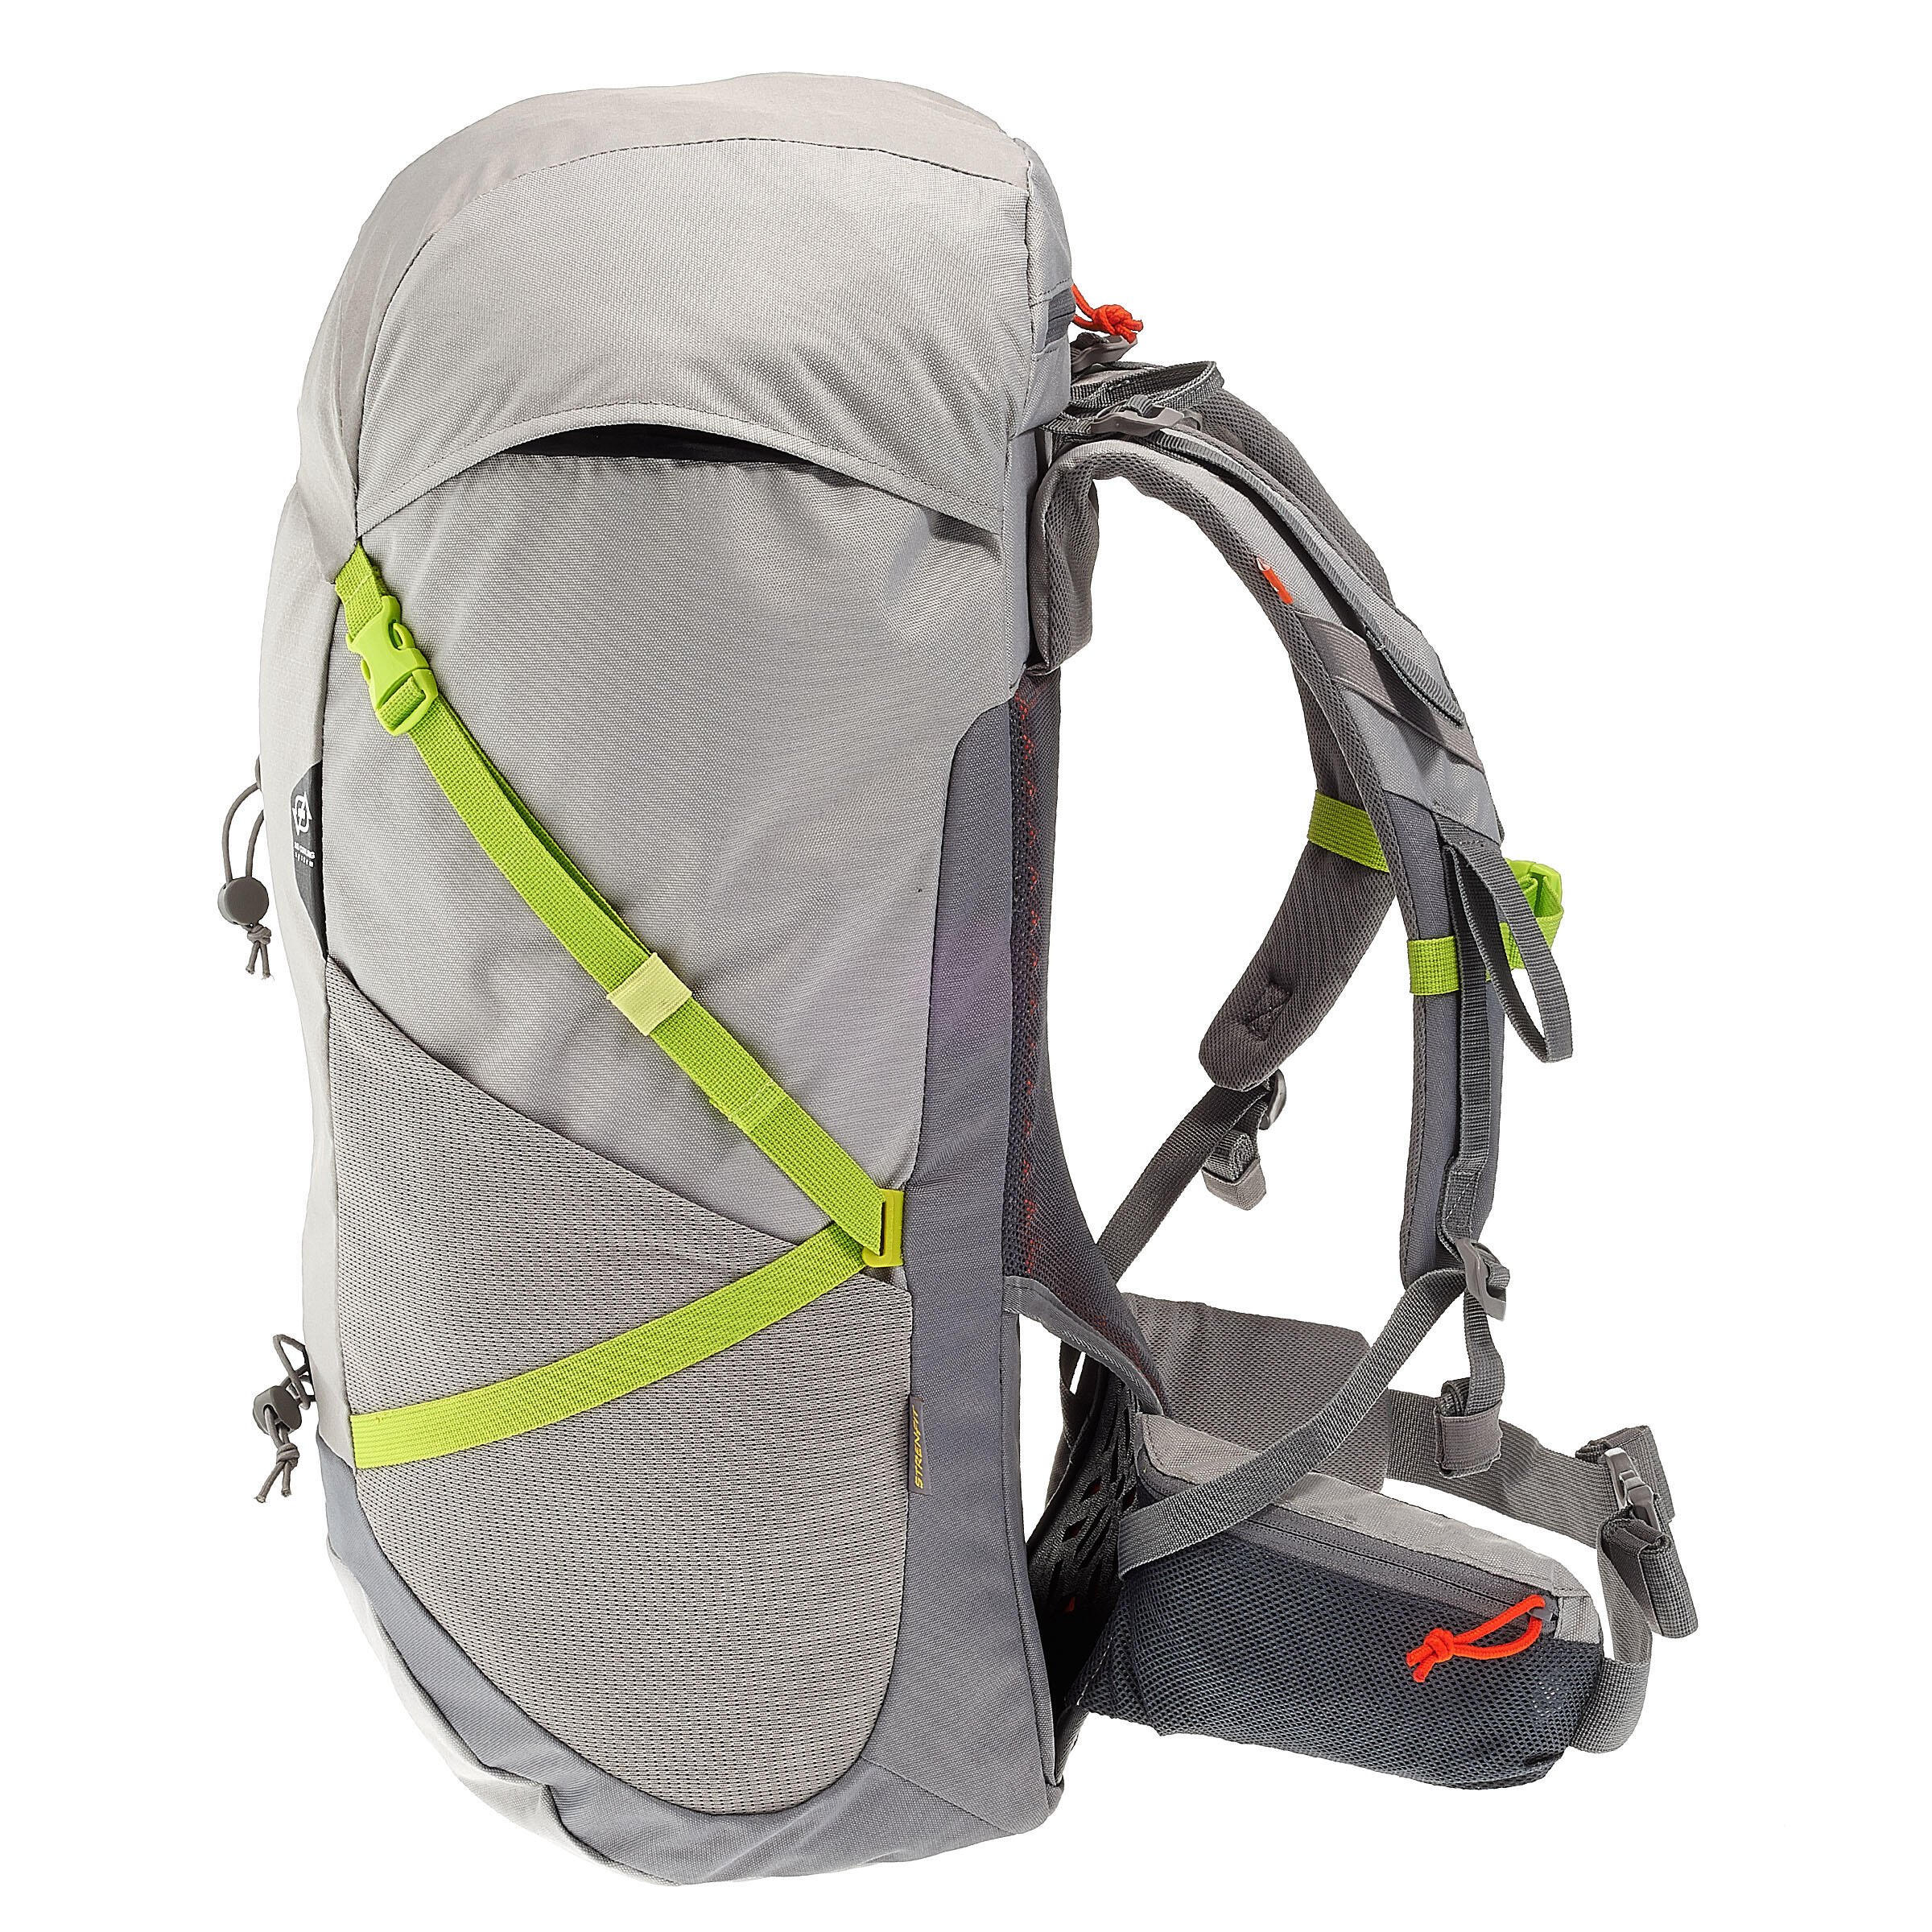 FORCLAZ 40 AIR backpack BLUE: AIR COOLING Label - regulates back perspiration 5/19